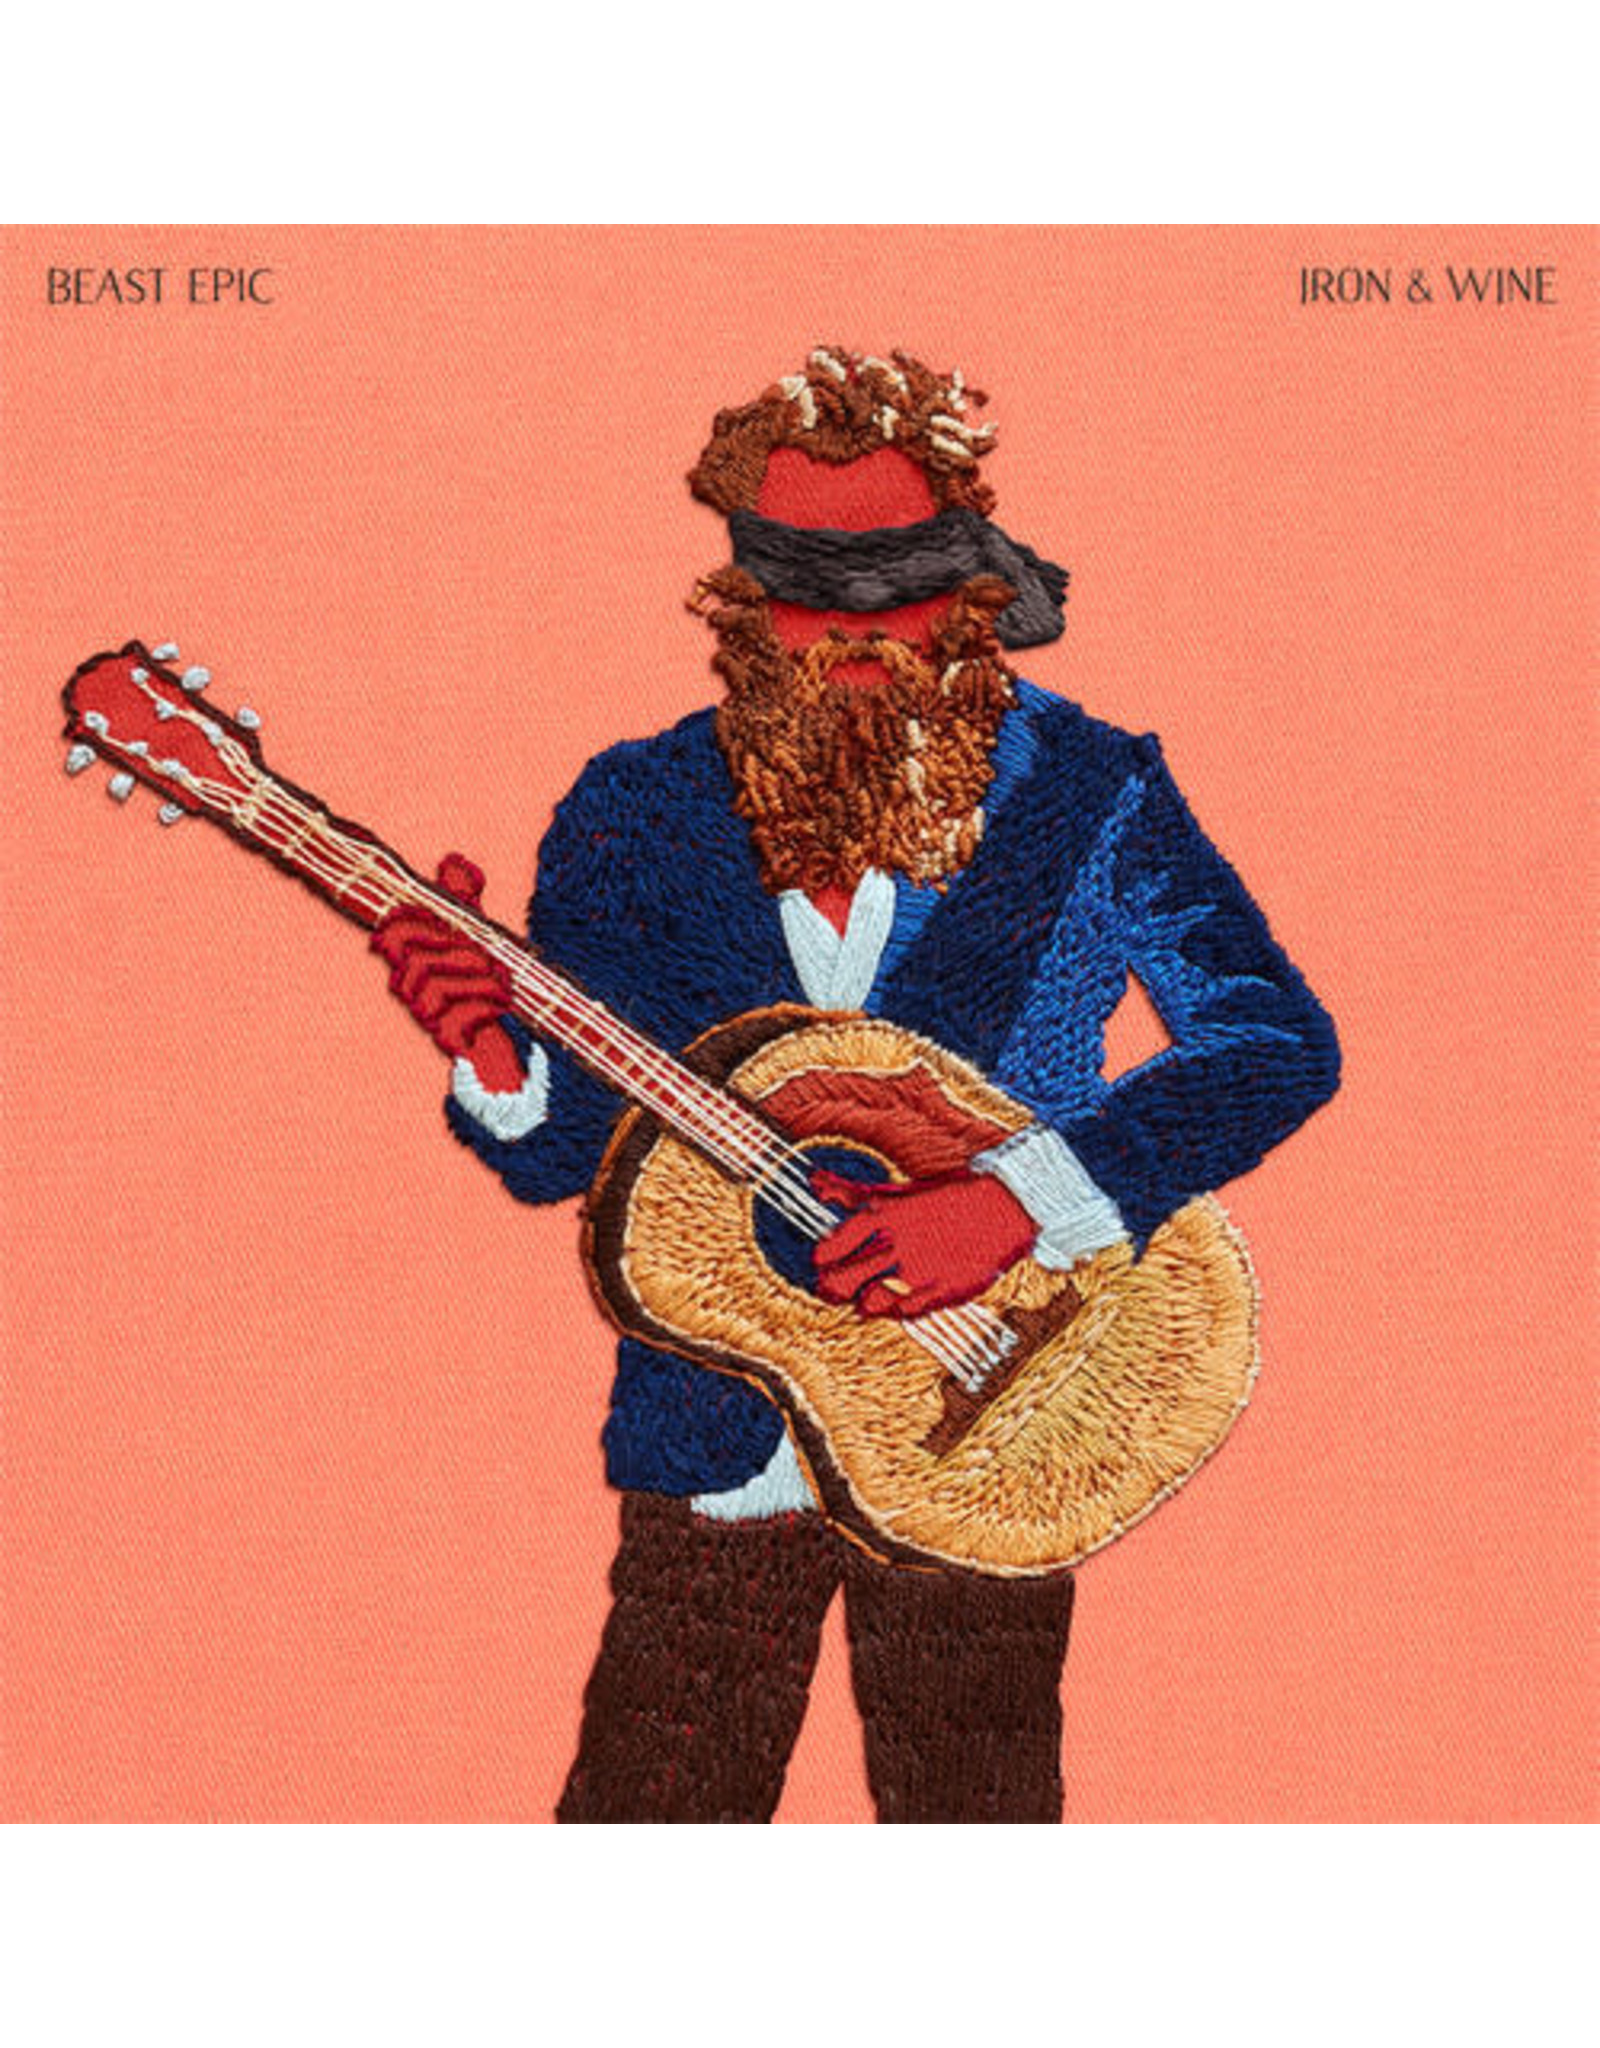 New Vinyl Iron & Wine - Beast Epic LP